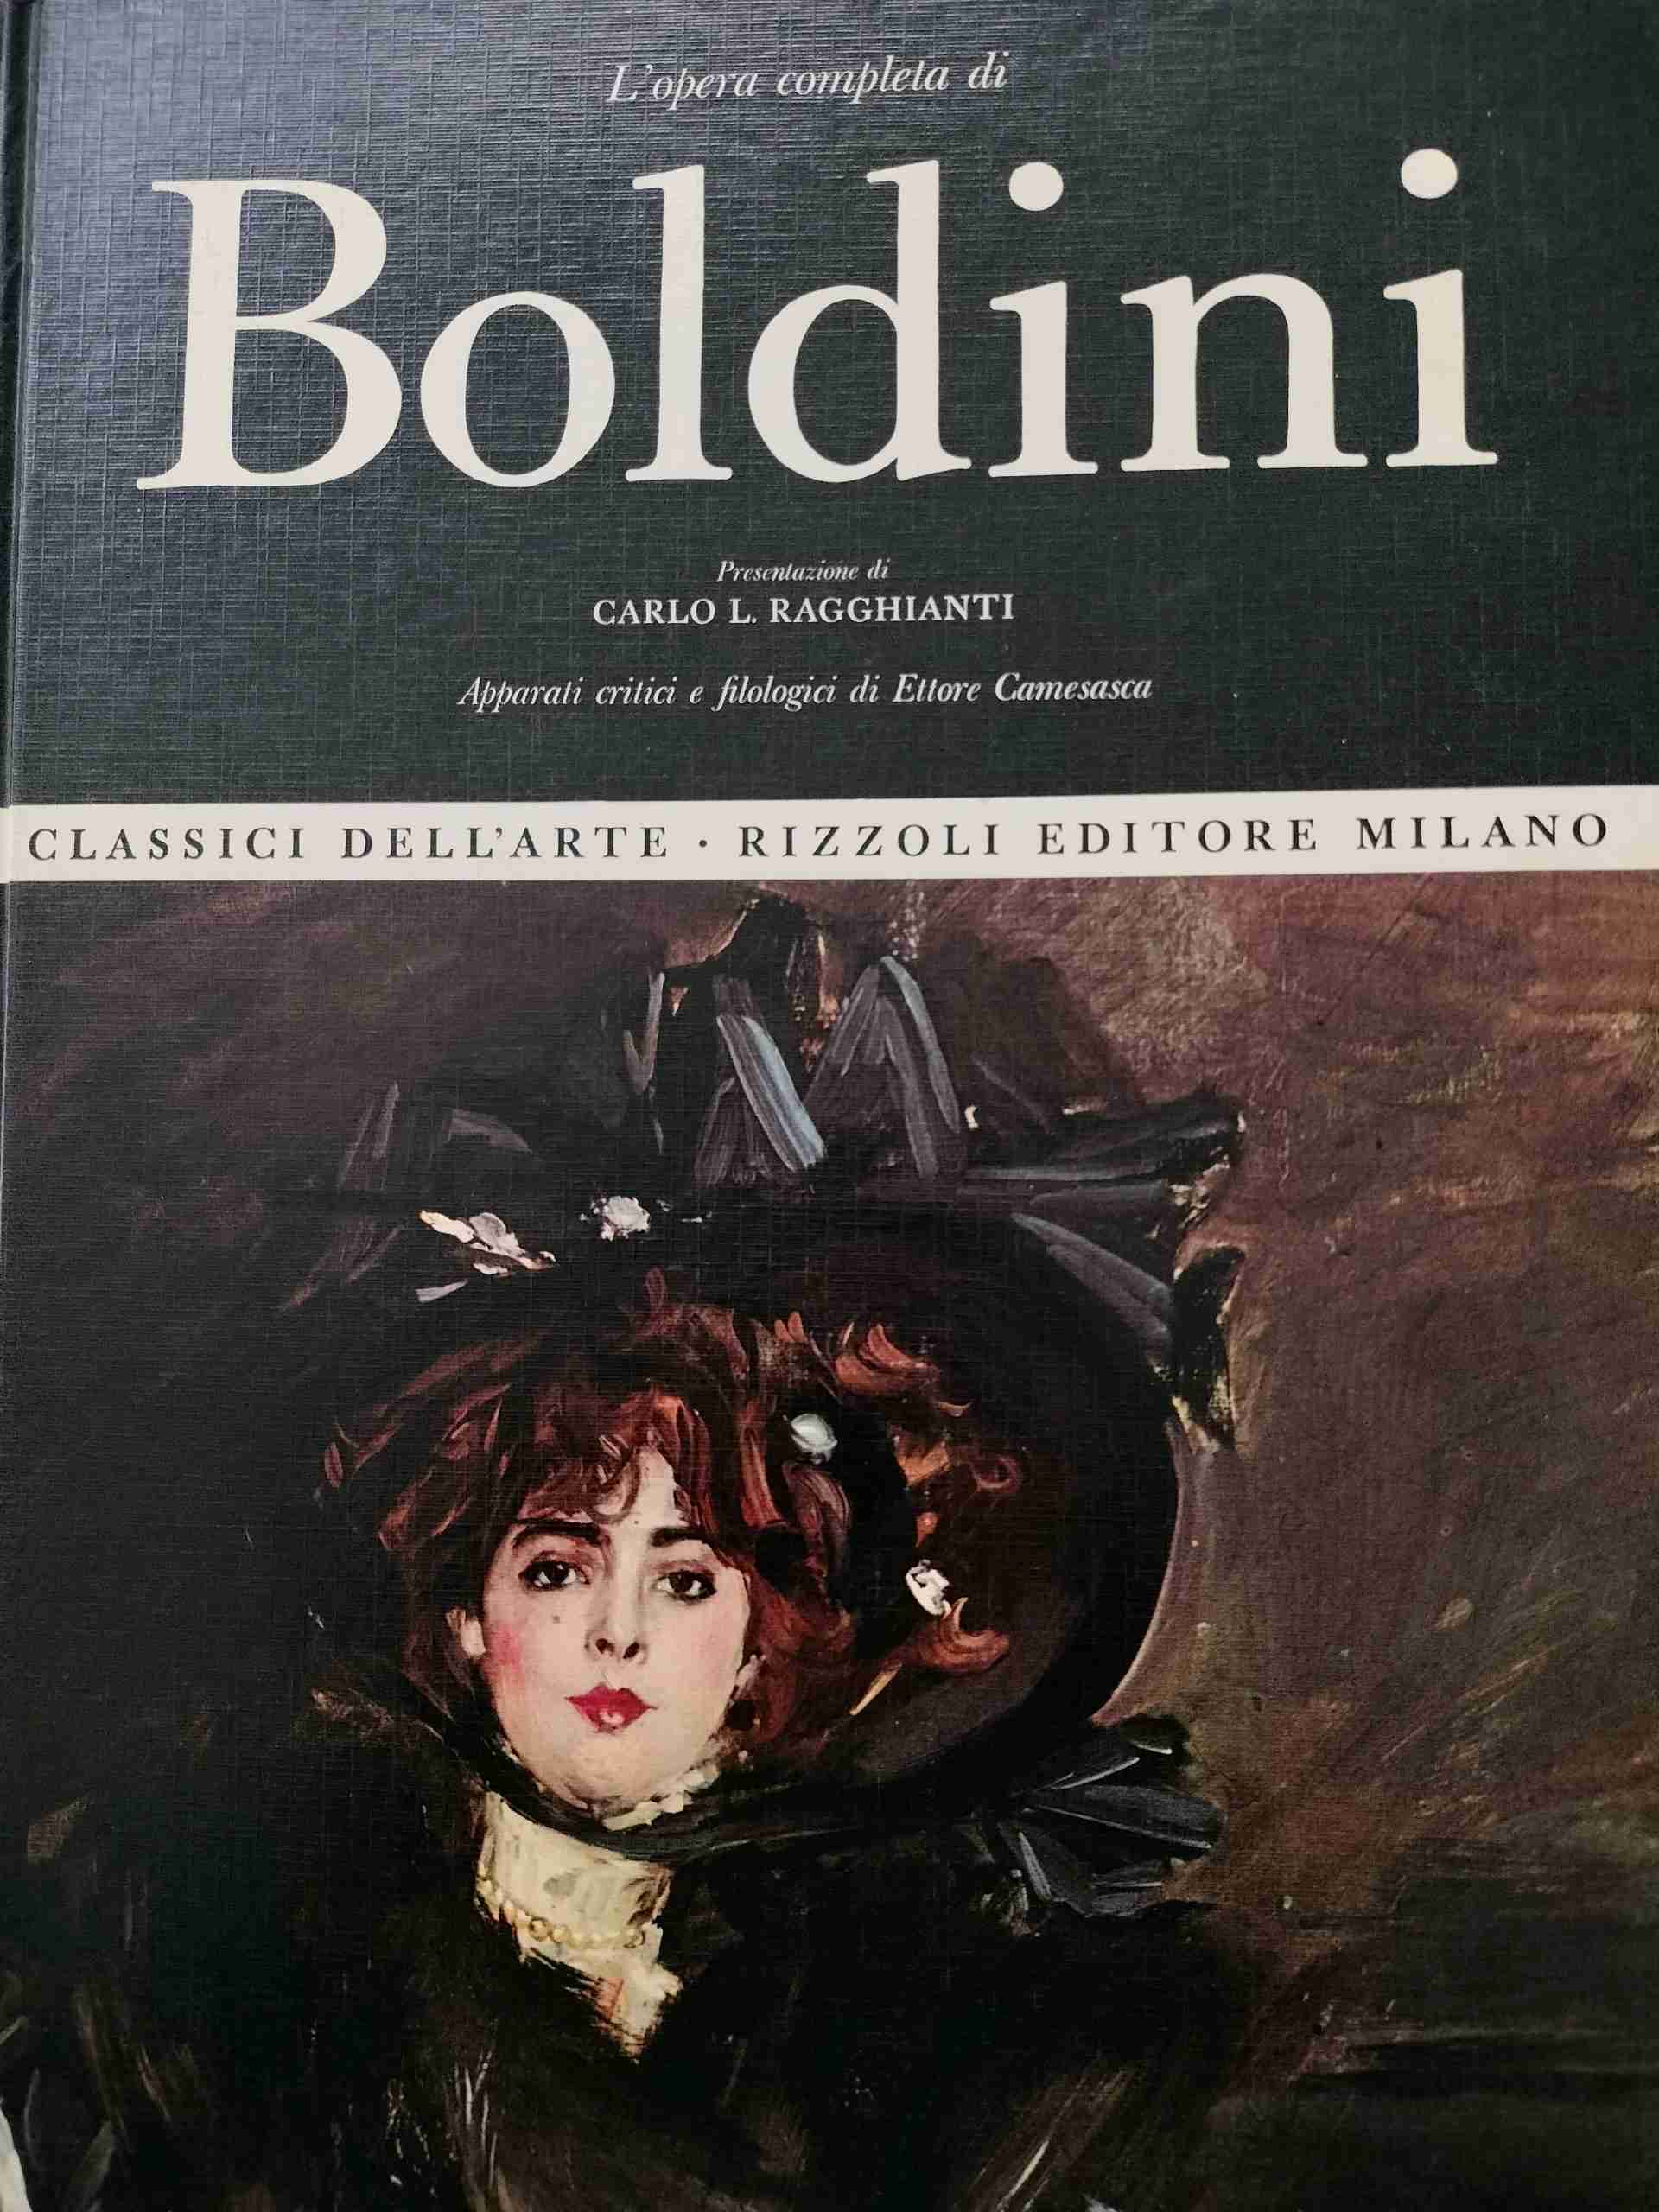 Boldini opera completa